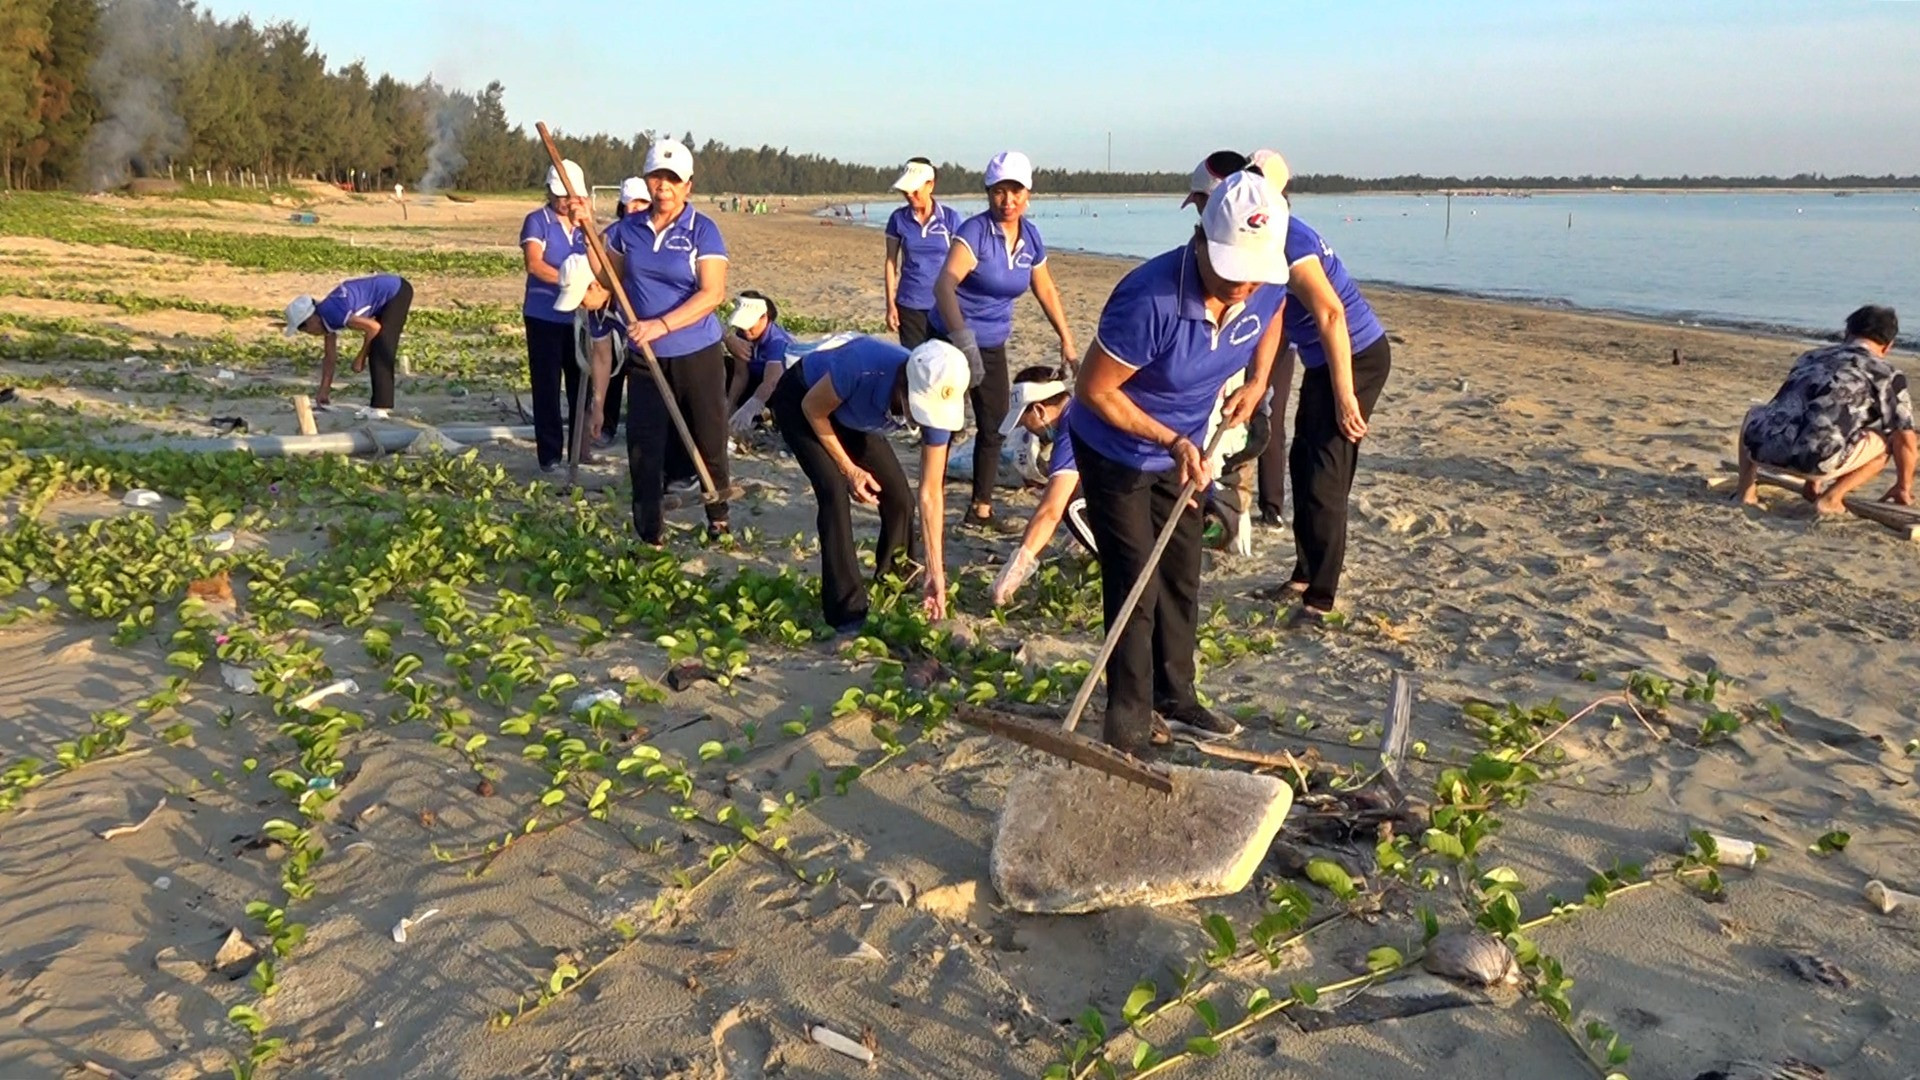 Dịp cuối tuần, người dân thôn Đông Tuần tự nguyện dọn dẹp bãi biển ở thôn này. Ảnh: H.Đ